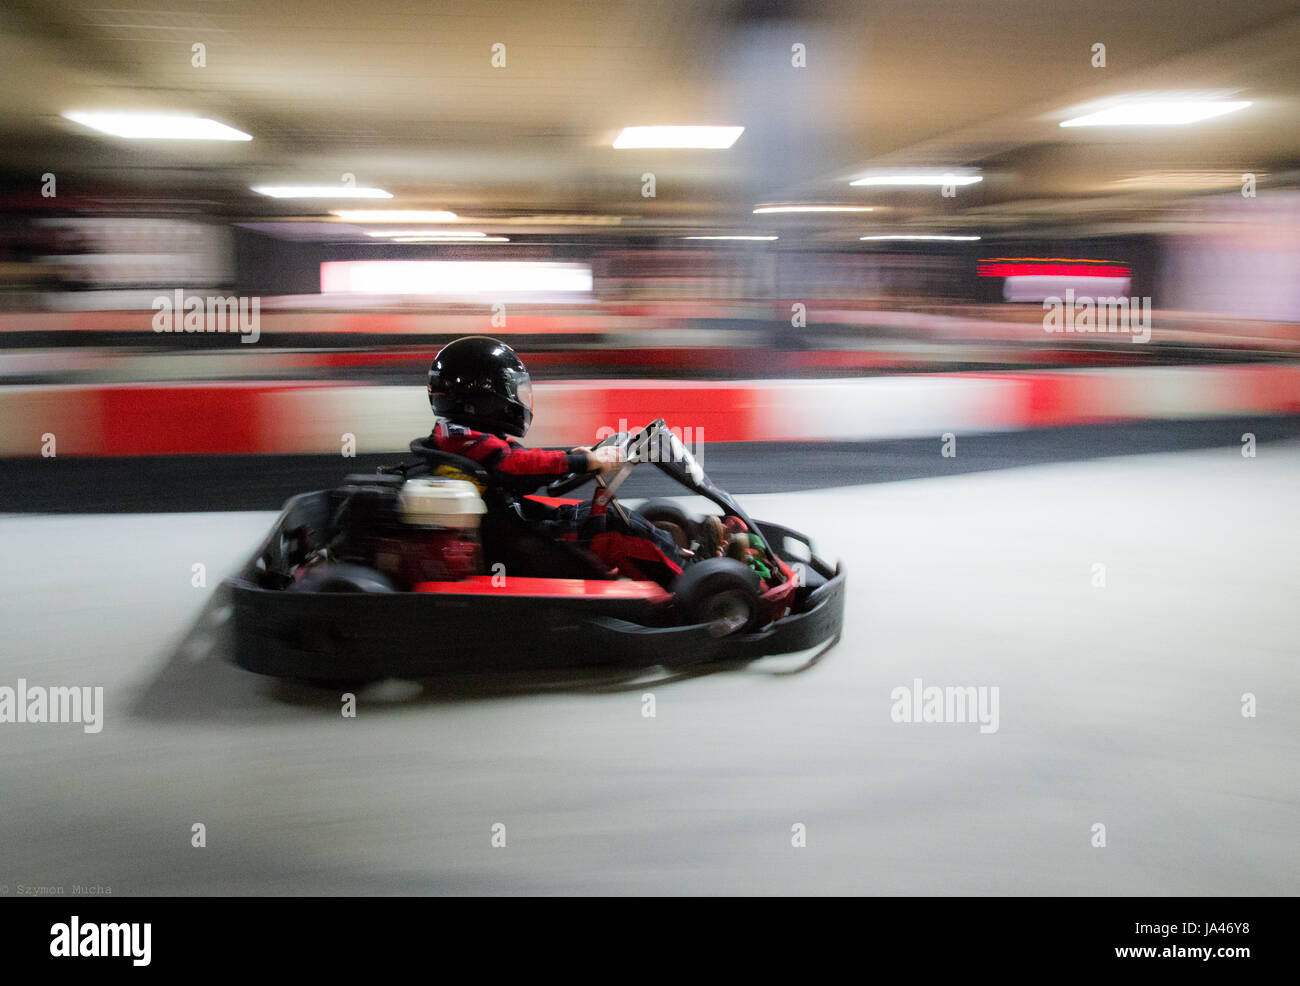 La velocità del carrello blur, un ragazzo avendo divertimento - guida veloce, corse, accelerando. Foto Stock